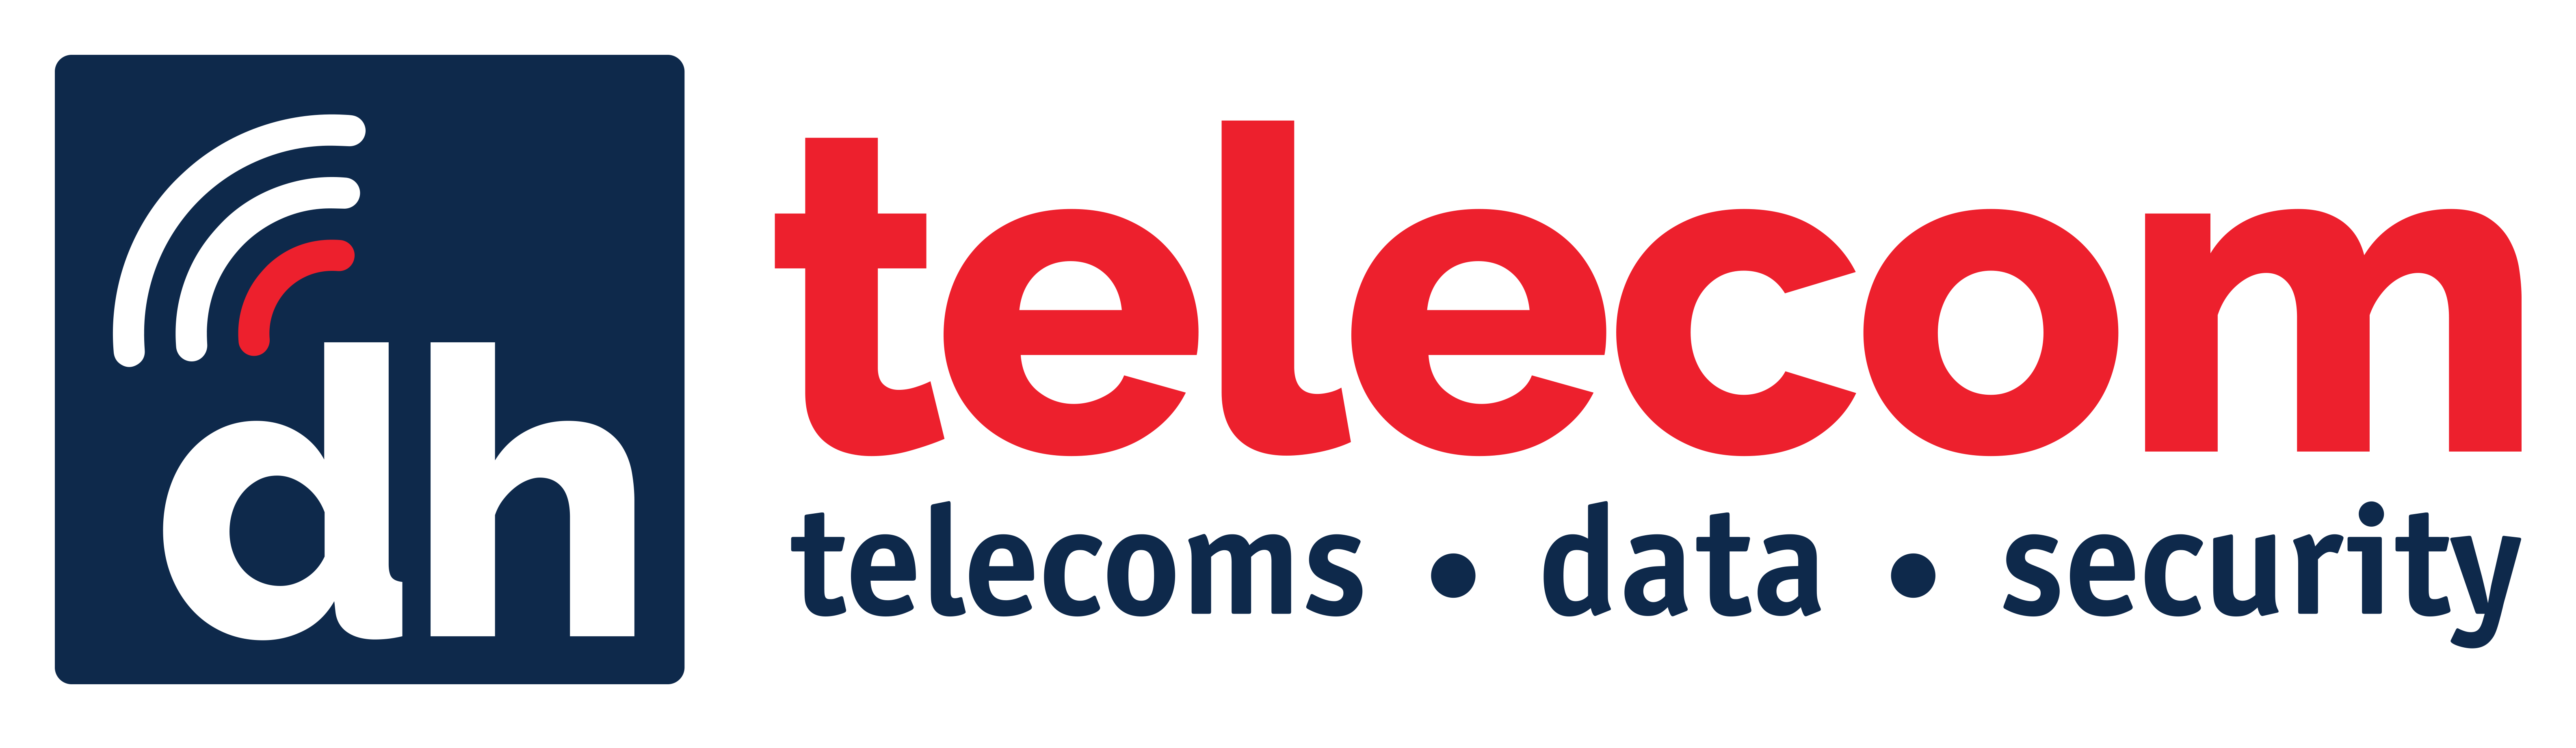 DH Telecom